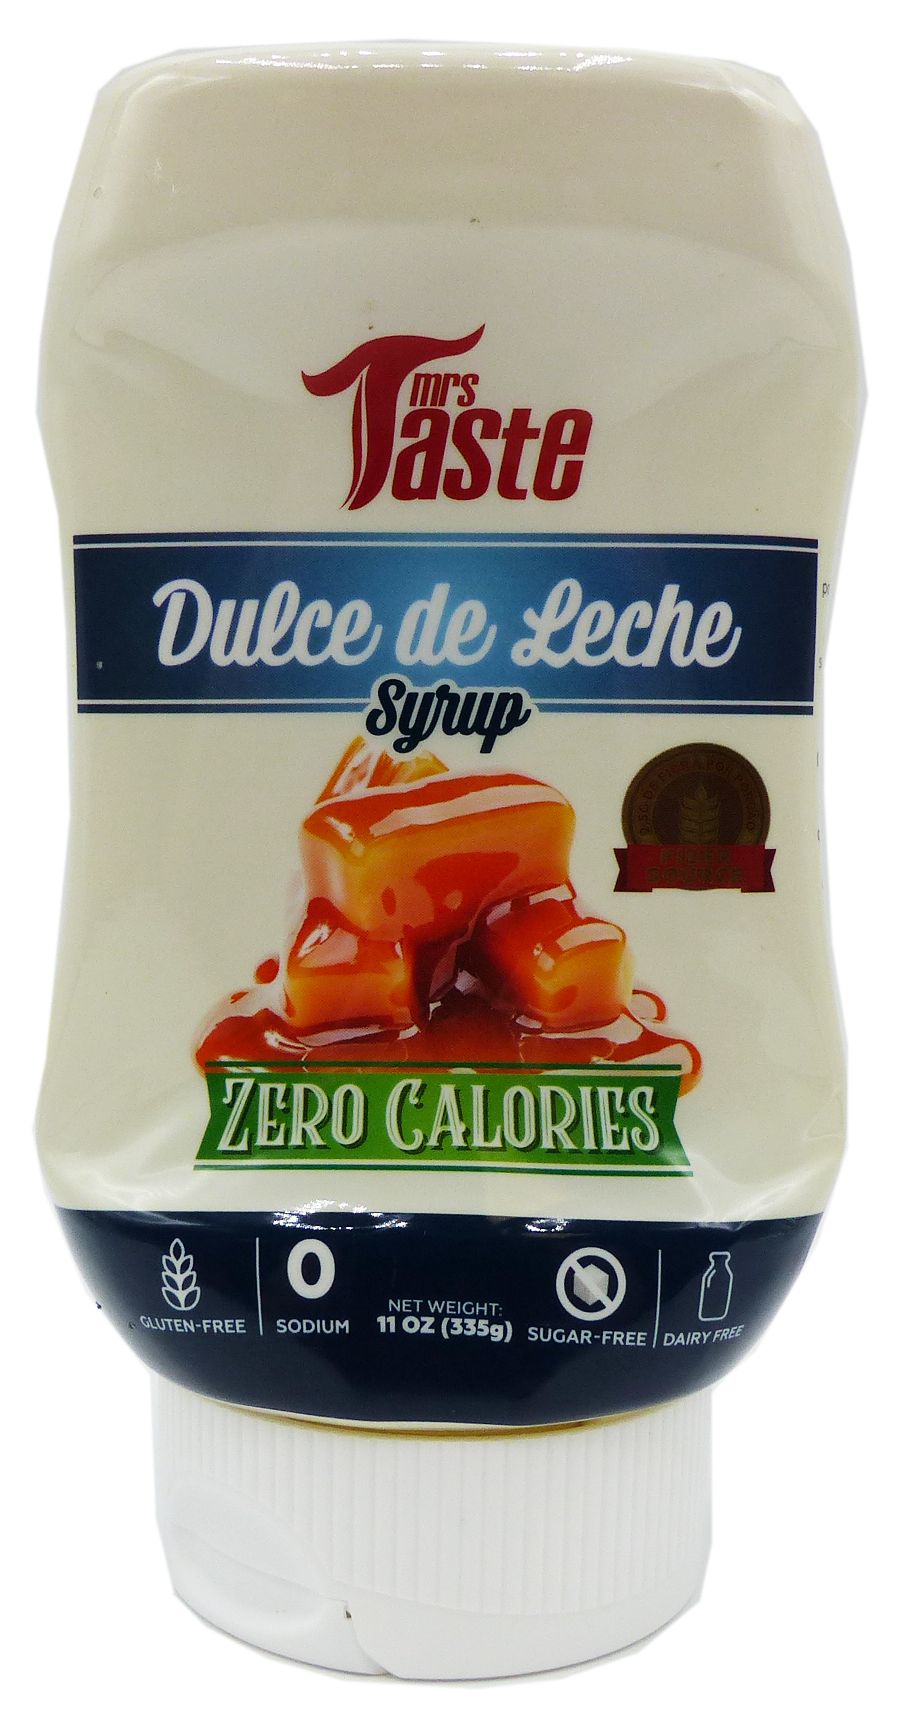 #Flavor_Dulce de Leche #Size_11 oz